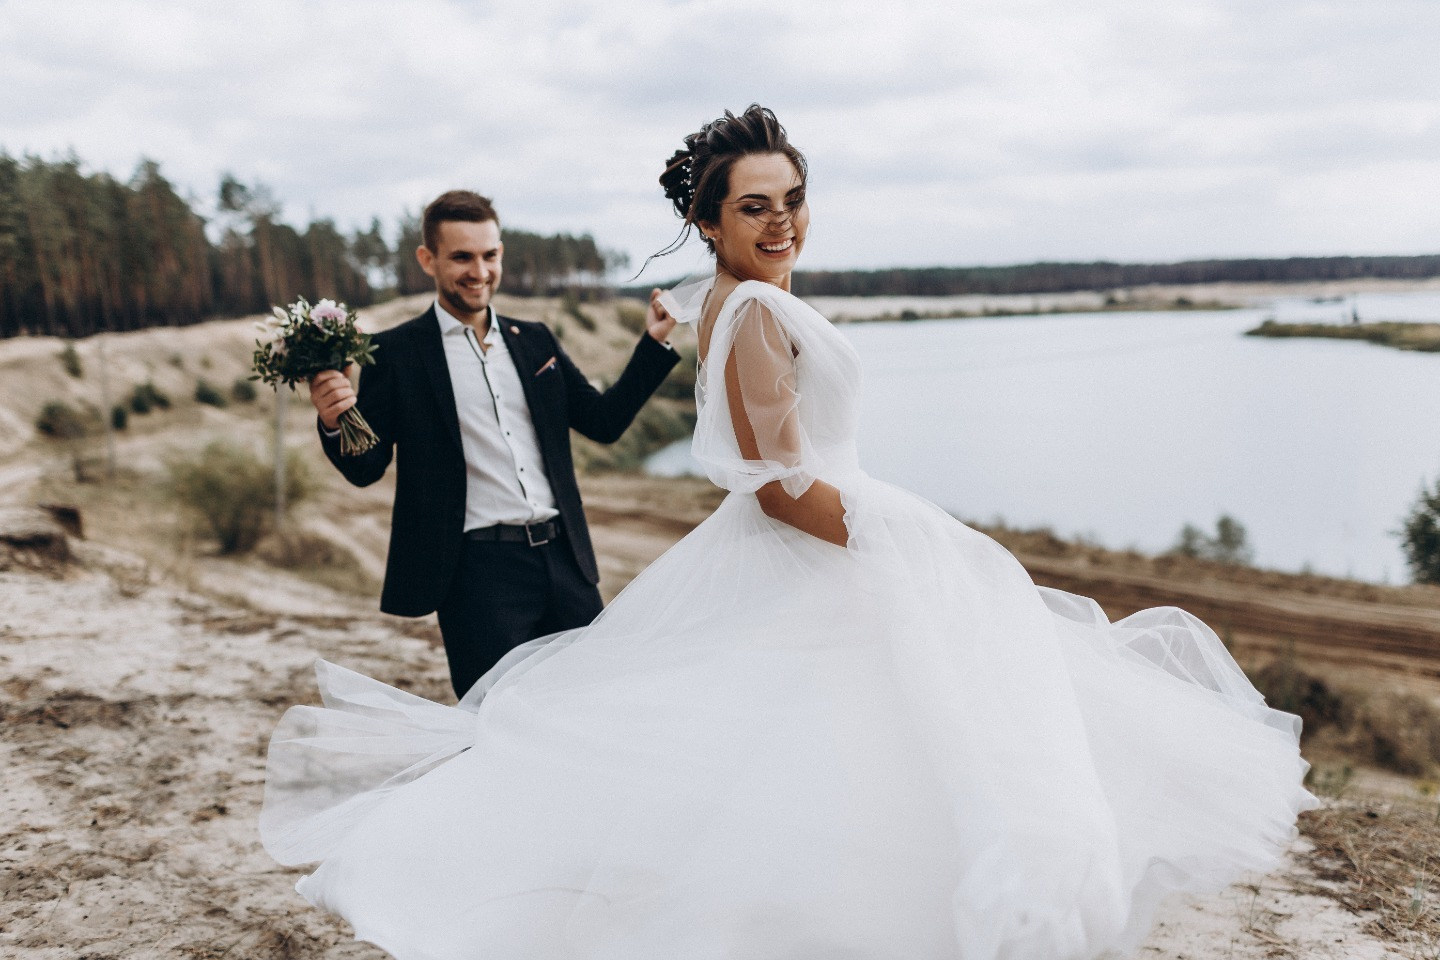 Тамада: Однажды на свадьбе застала невесту с парнем в туалете / Україна / ЖЖ інфо